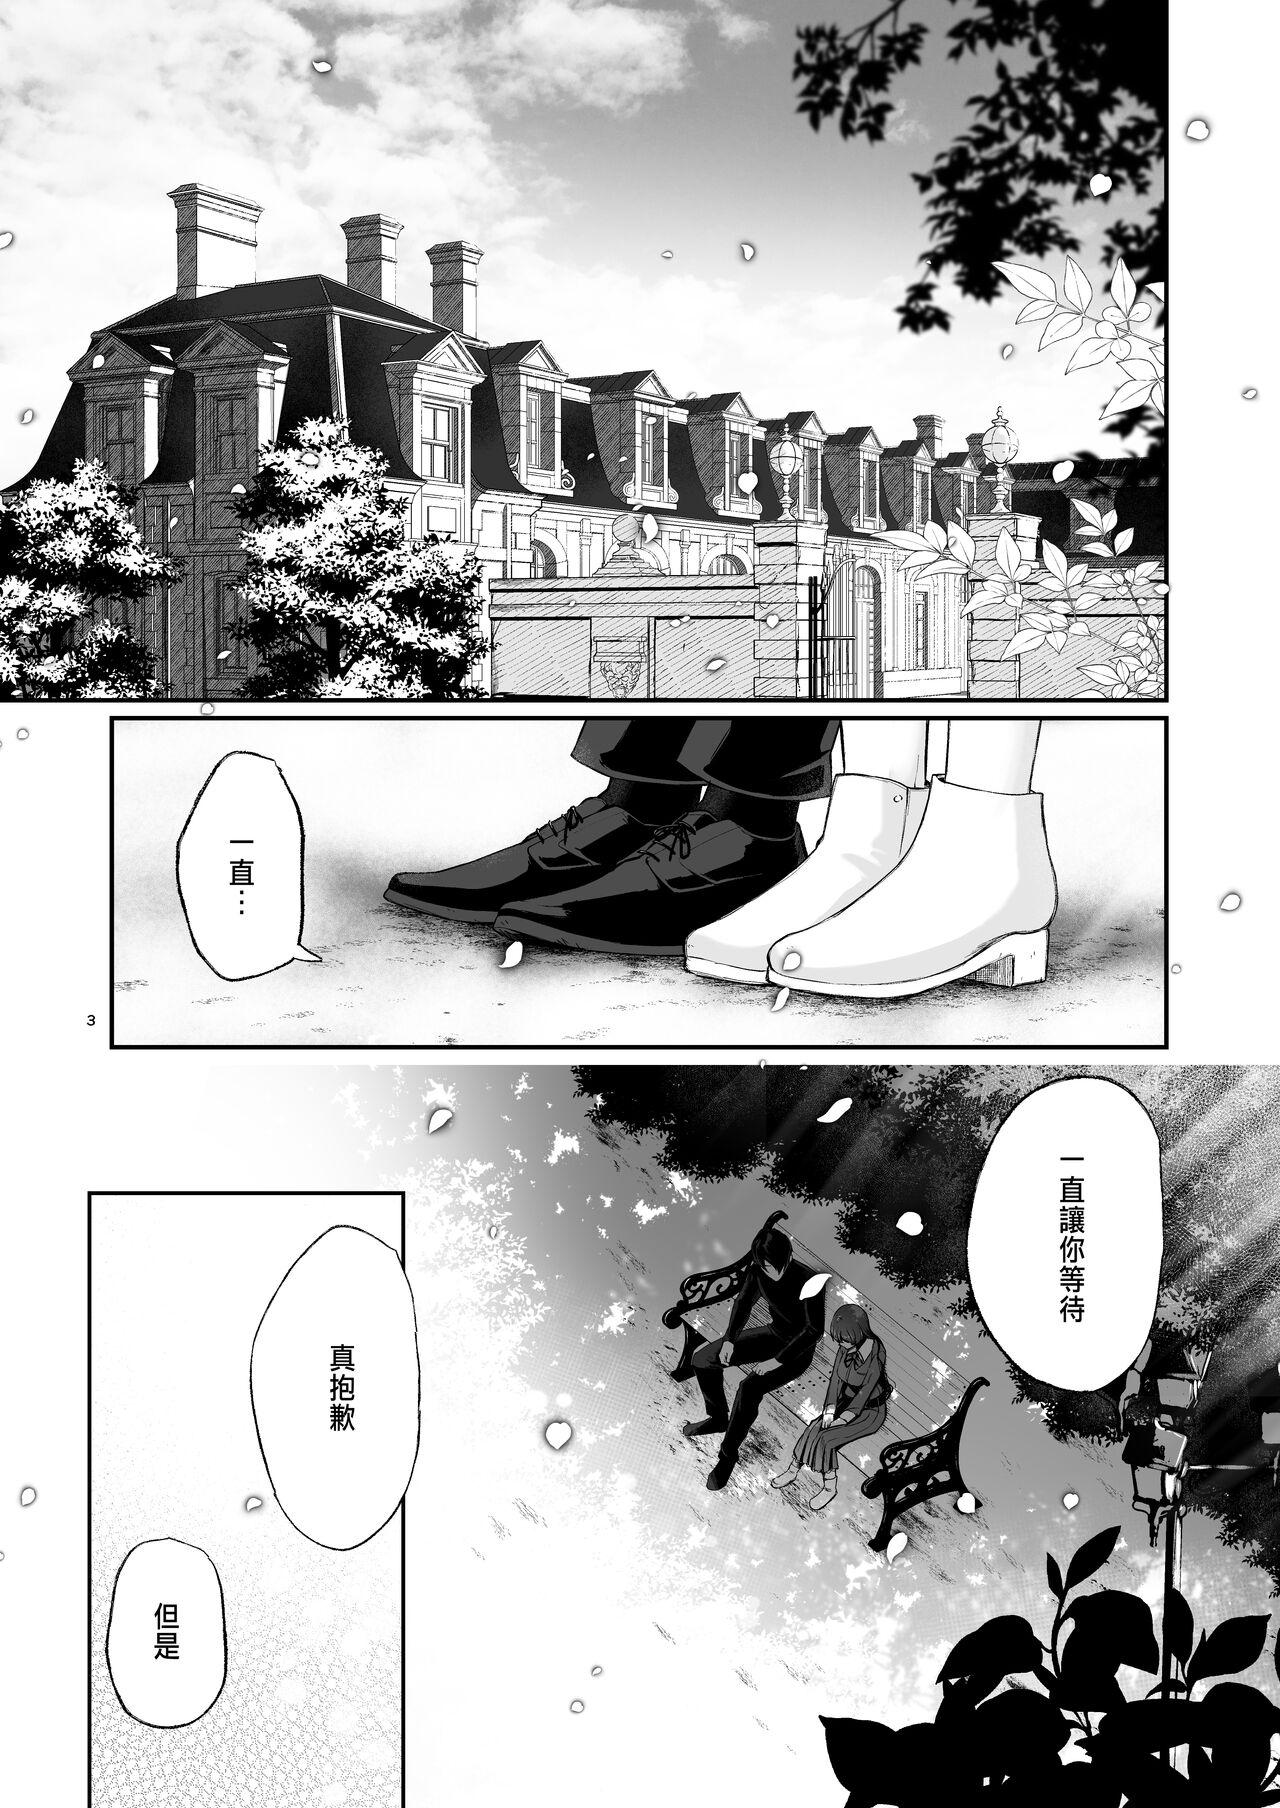 Shecock Jorougumo no Hanazono 3 - Original Fleshlight - Page 1